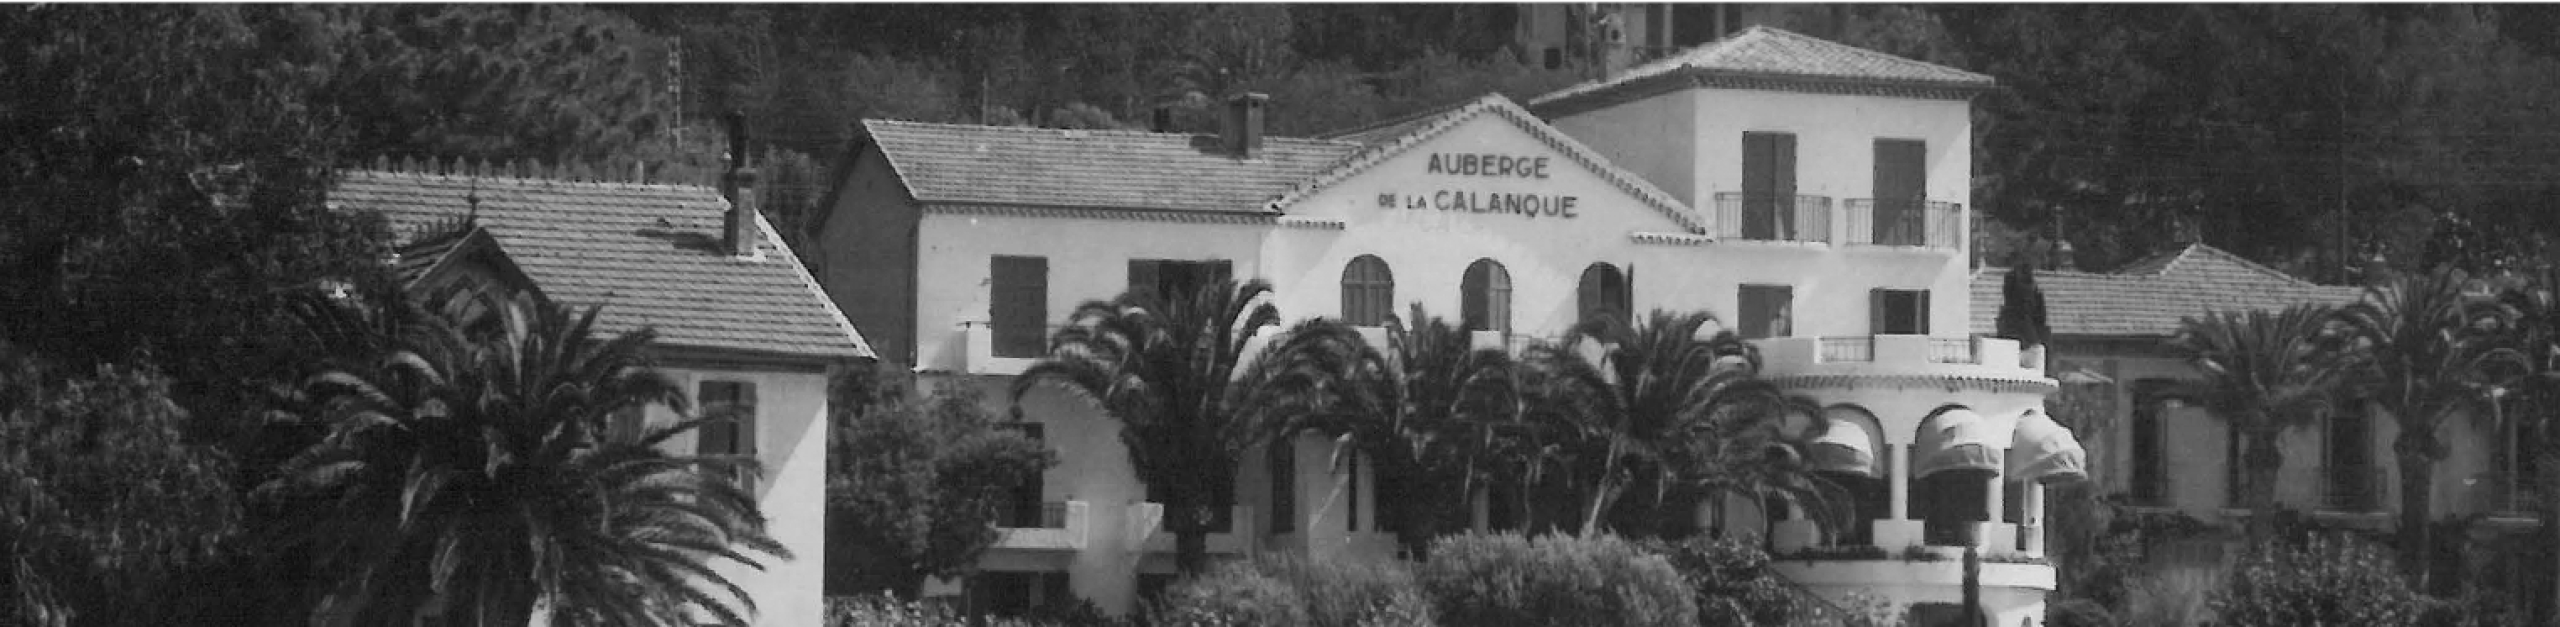 Toute l'histoire de l'hôtel Auberge de la Calanque au Lavandou